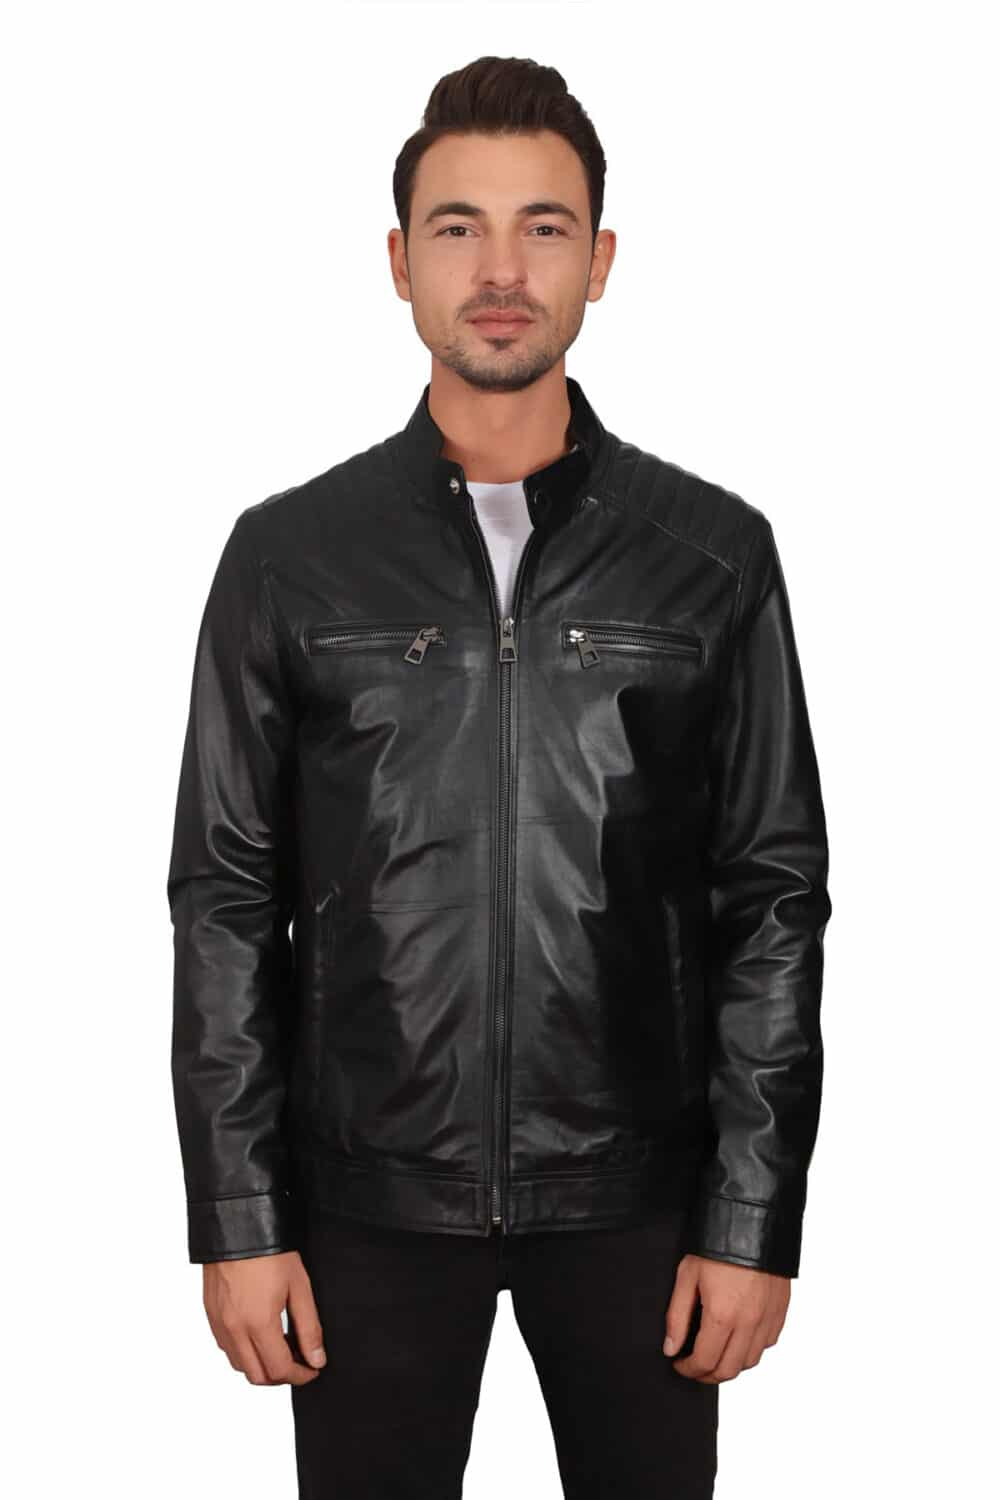 Men's 100 % Real Black Leather Sport Dazzling Jacket